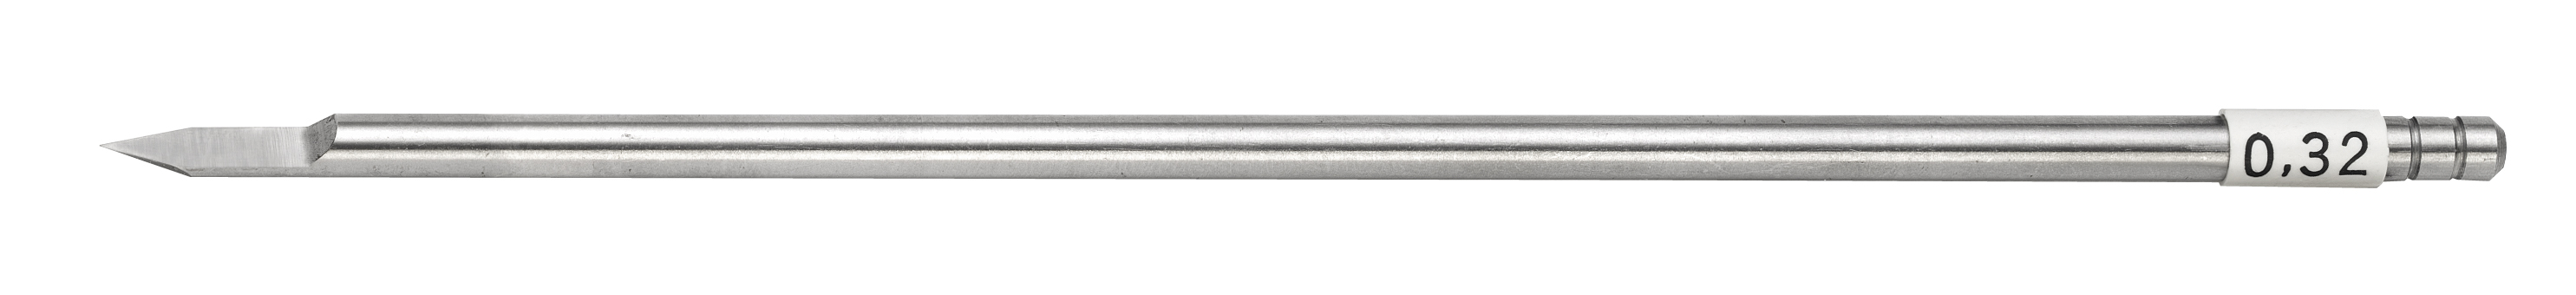 HSS-frees steel-Ø 3,17 mm breedte 0,32 mm Gravograph